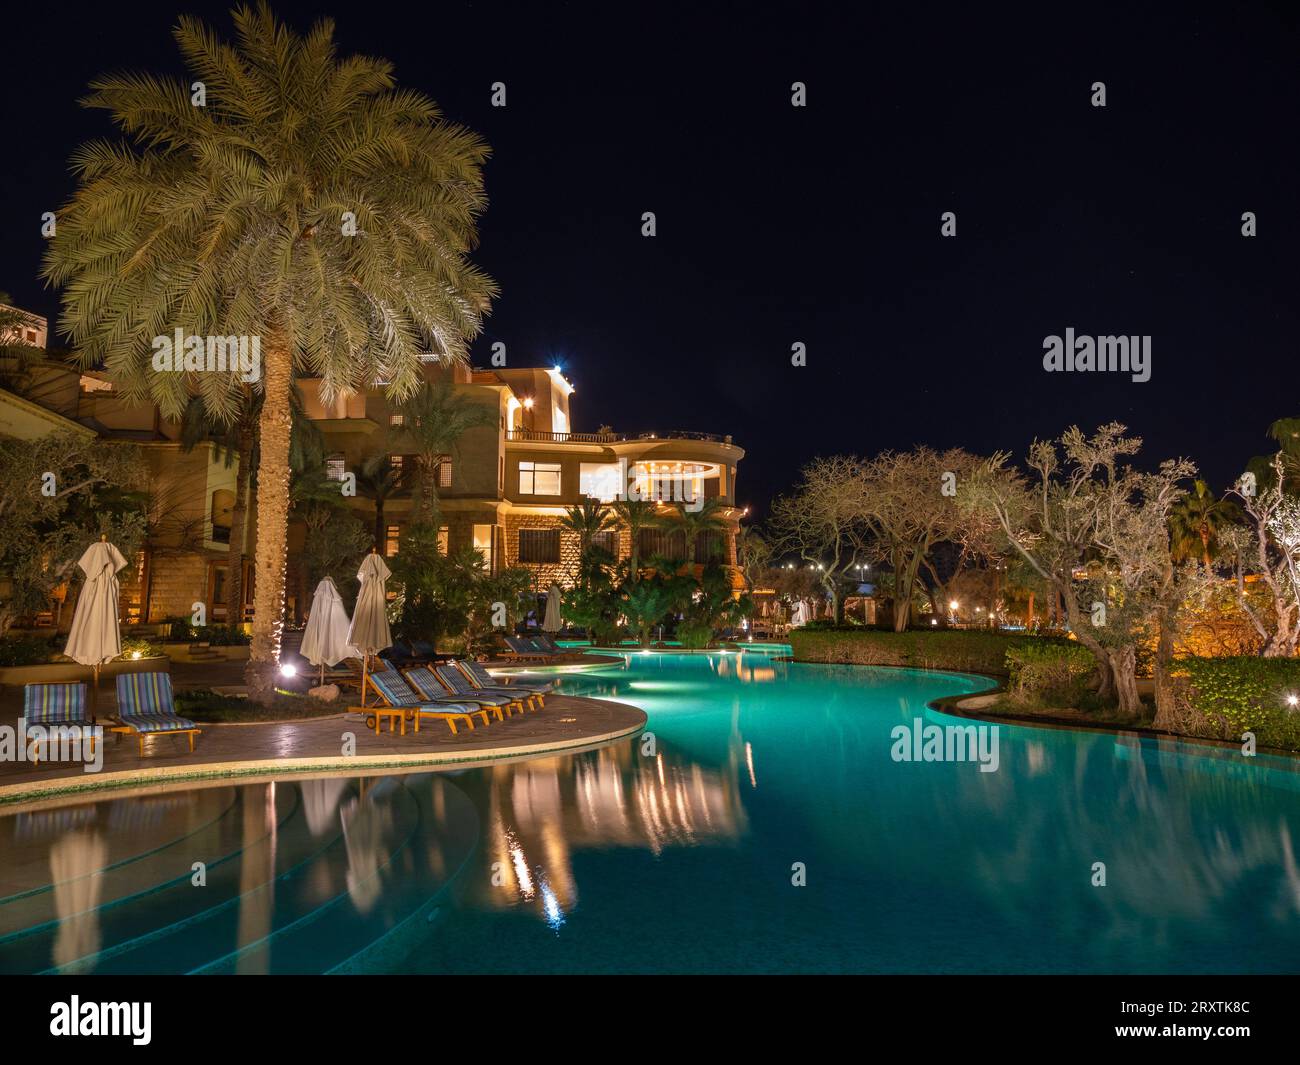 Nuit au Kempinski Hotel Ishtar, un complexe cinq étoiles de luxe au bord de la mer Morte inspiré des jardins suspendus de Babylone, Jordanie, Moyen-Orient Banque D'Images